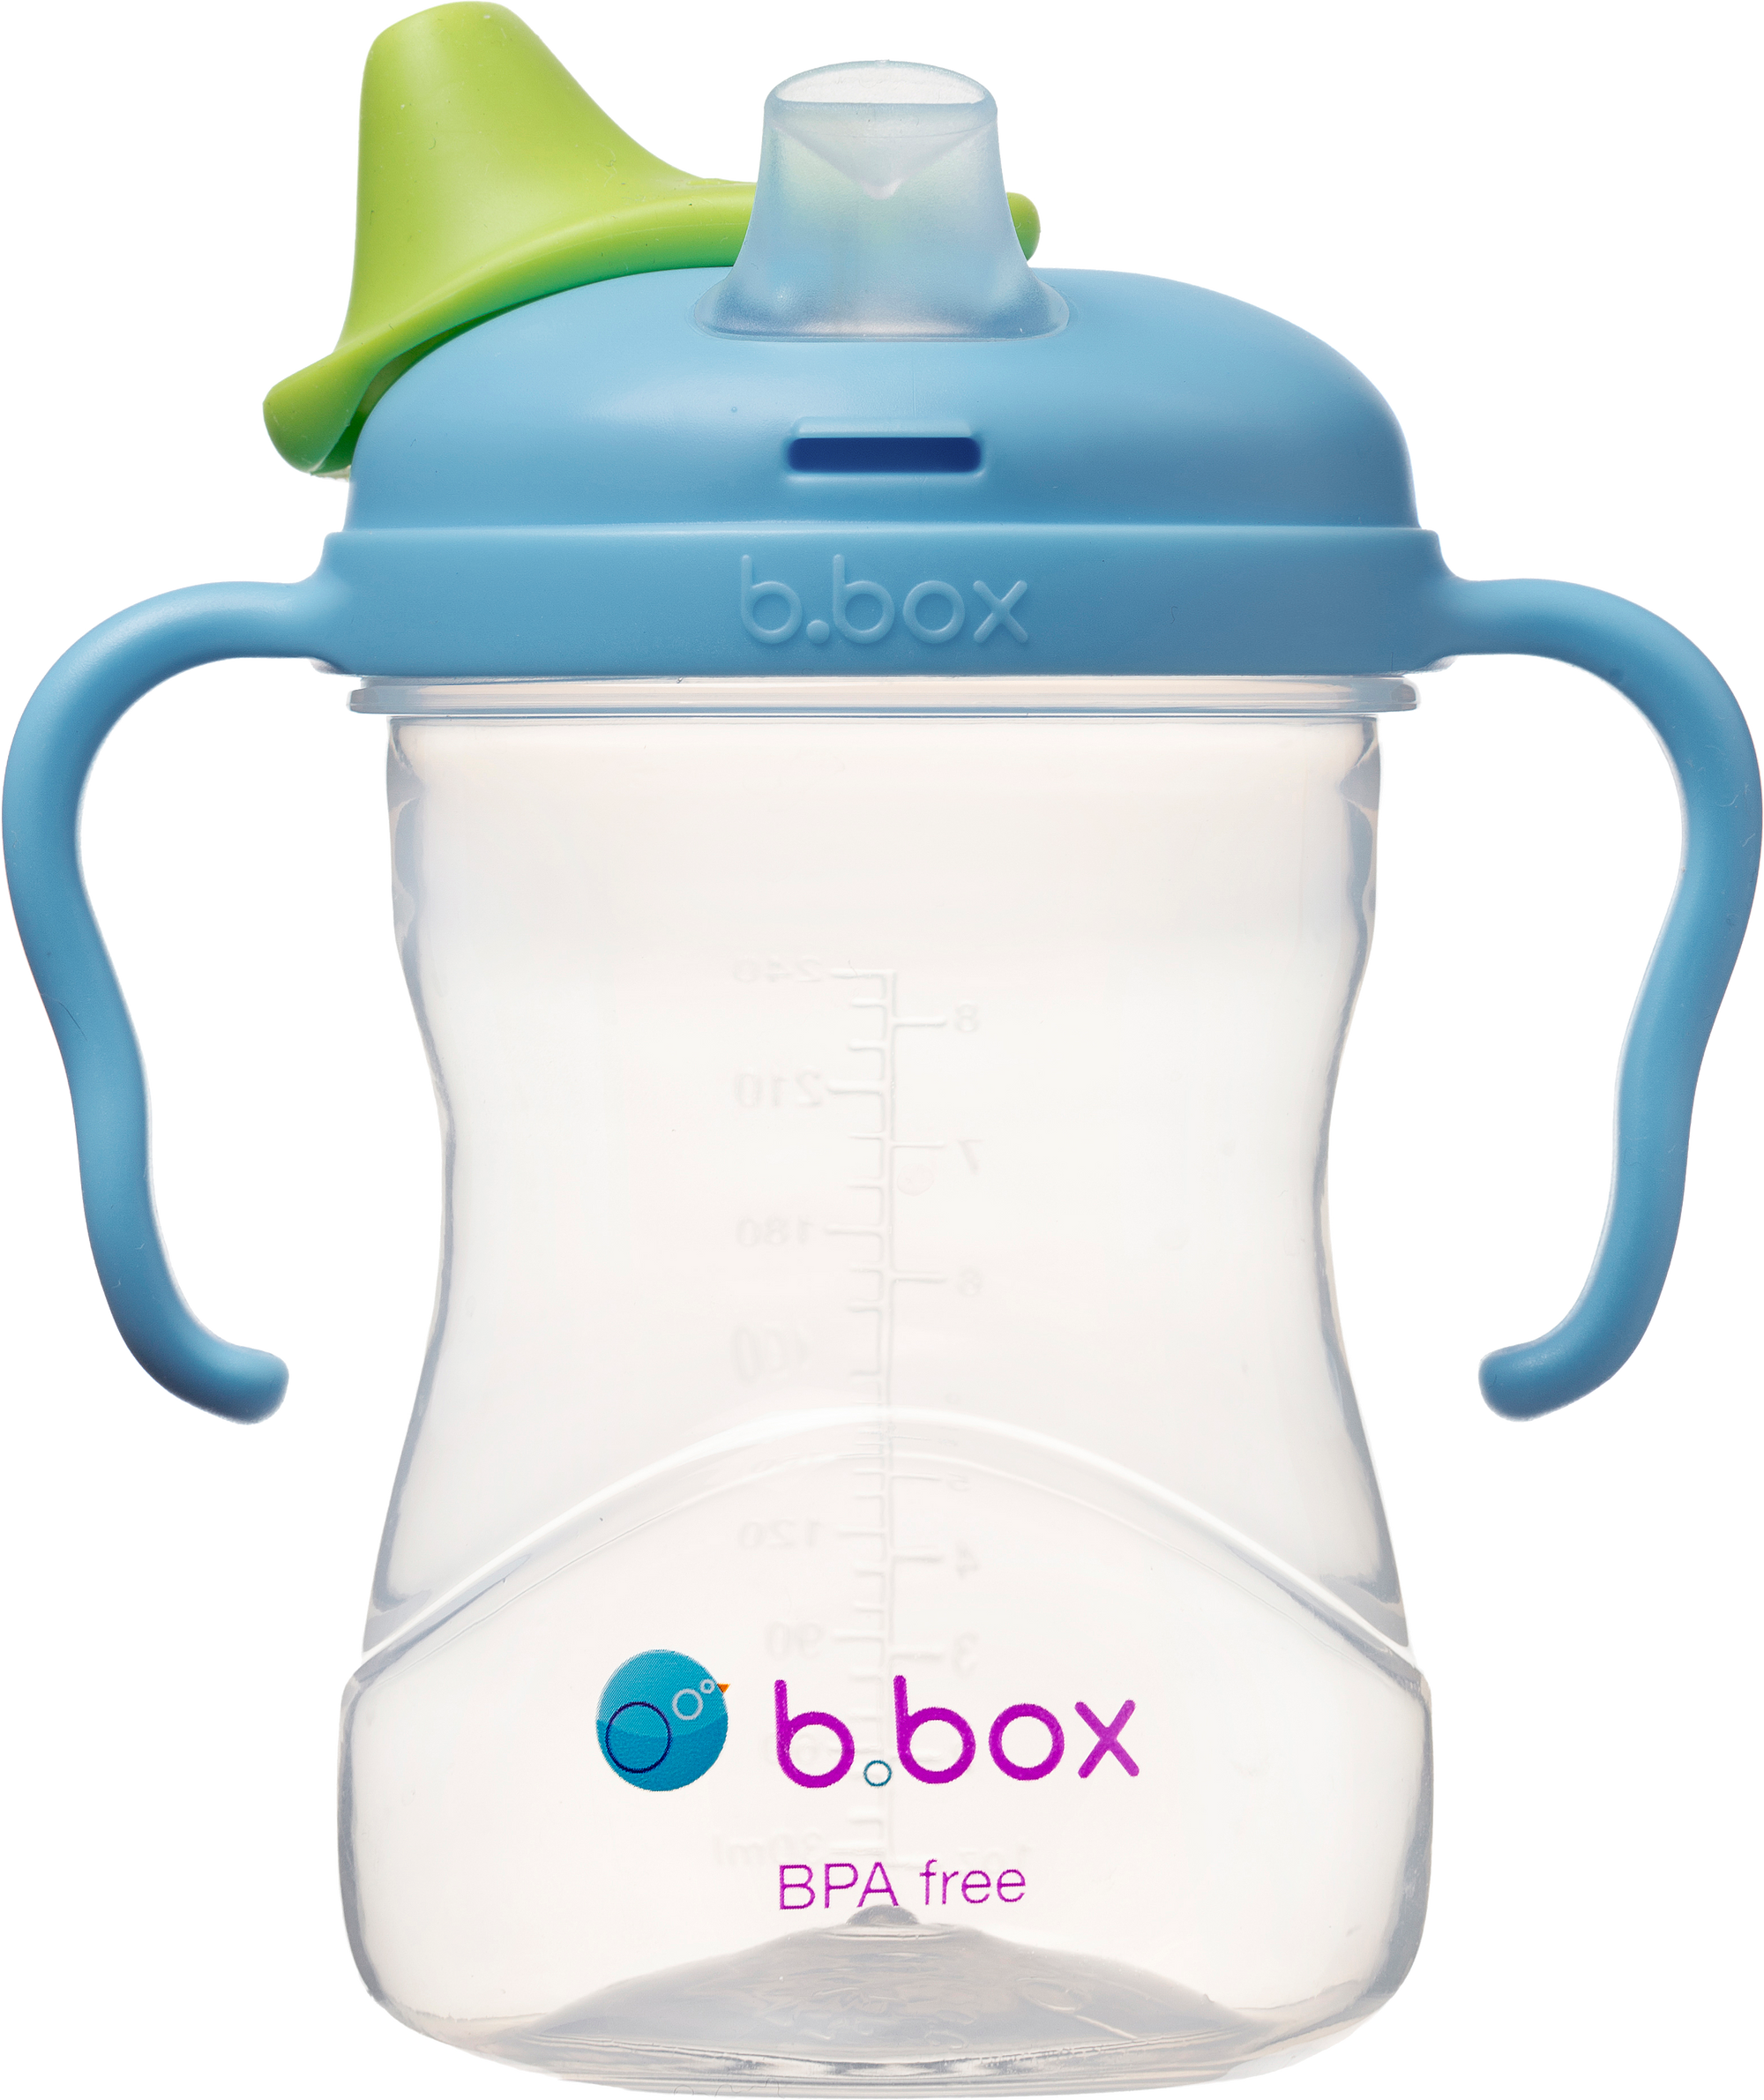 B Box - Spout cup - Blueberry